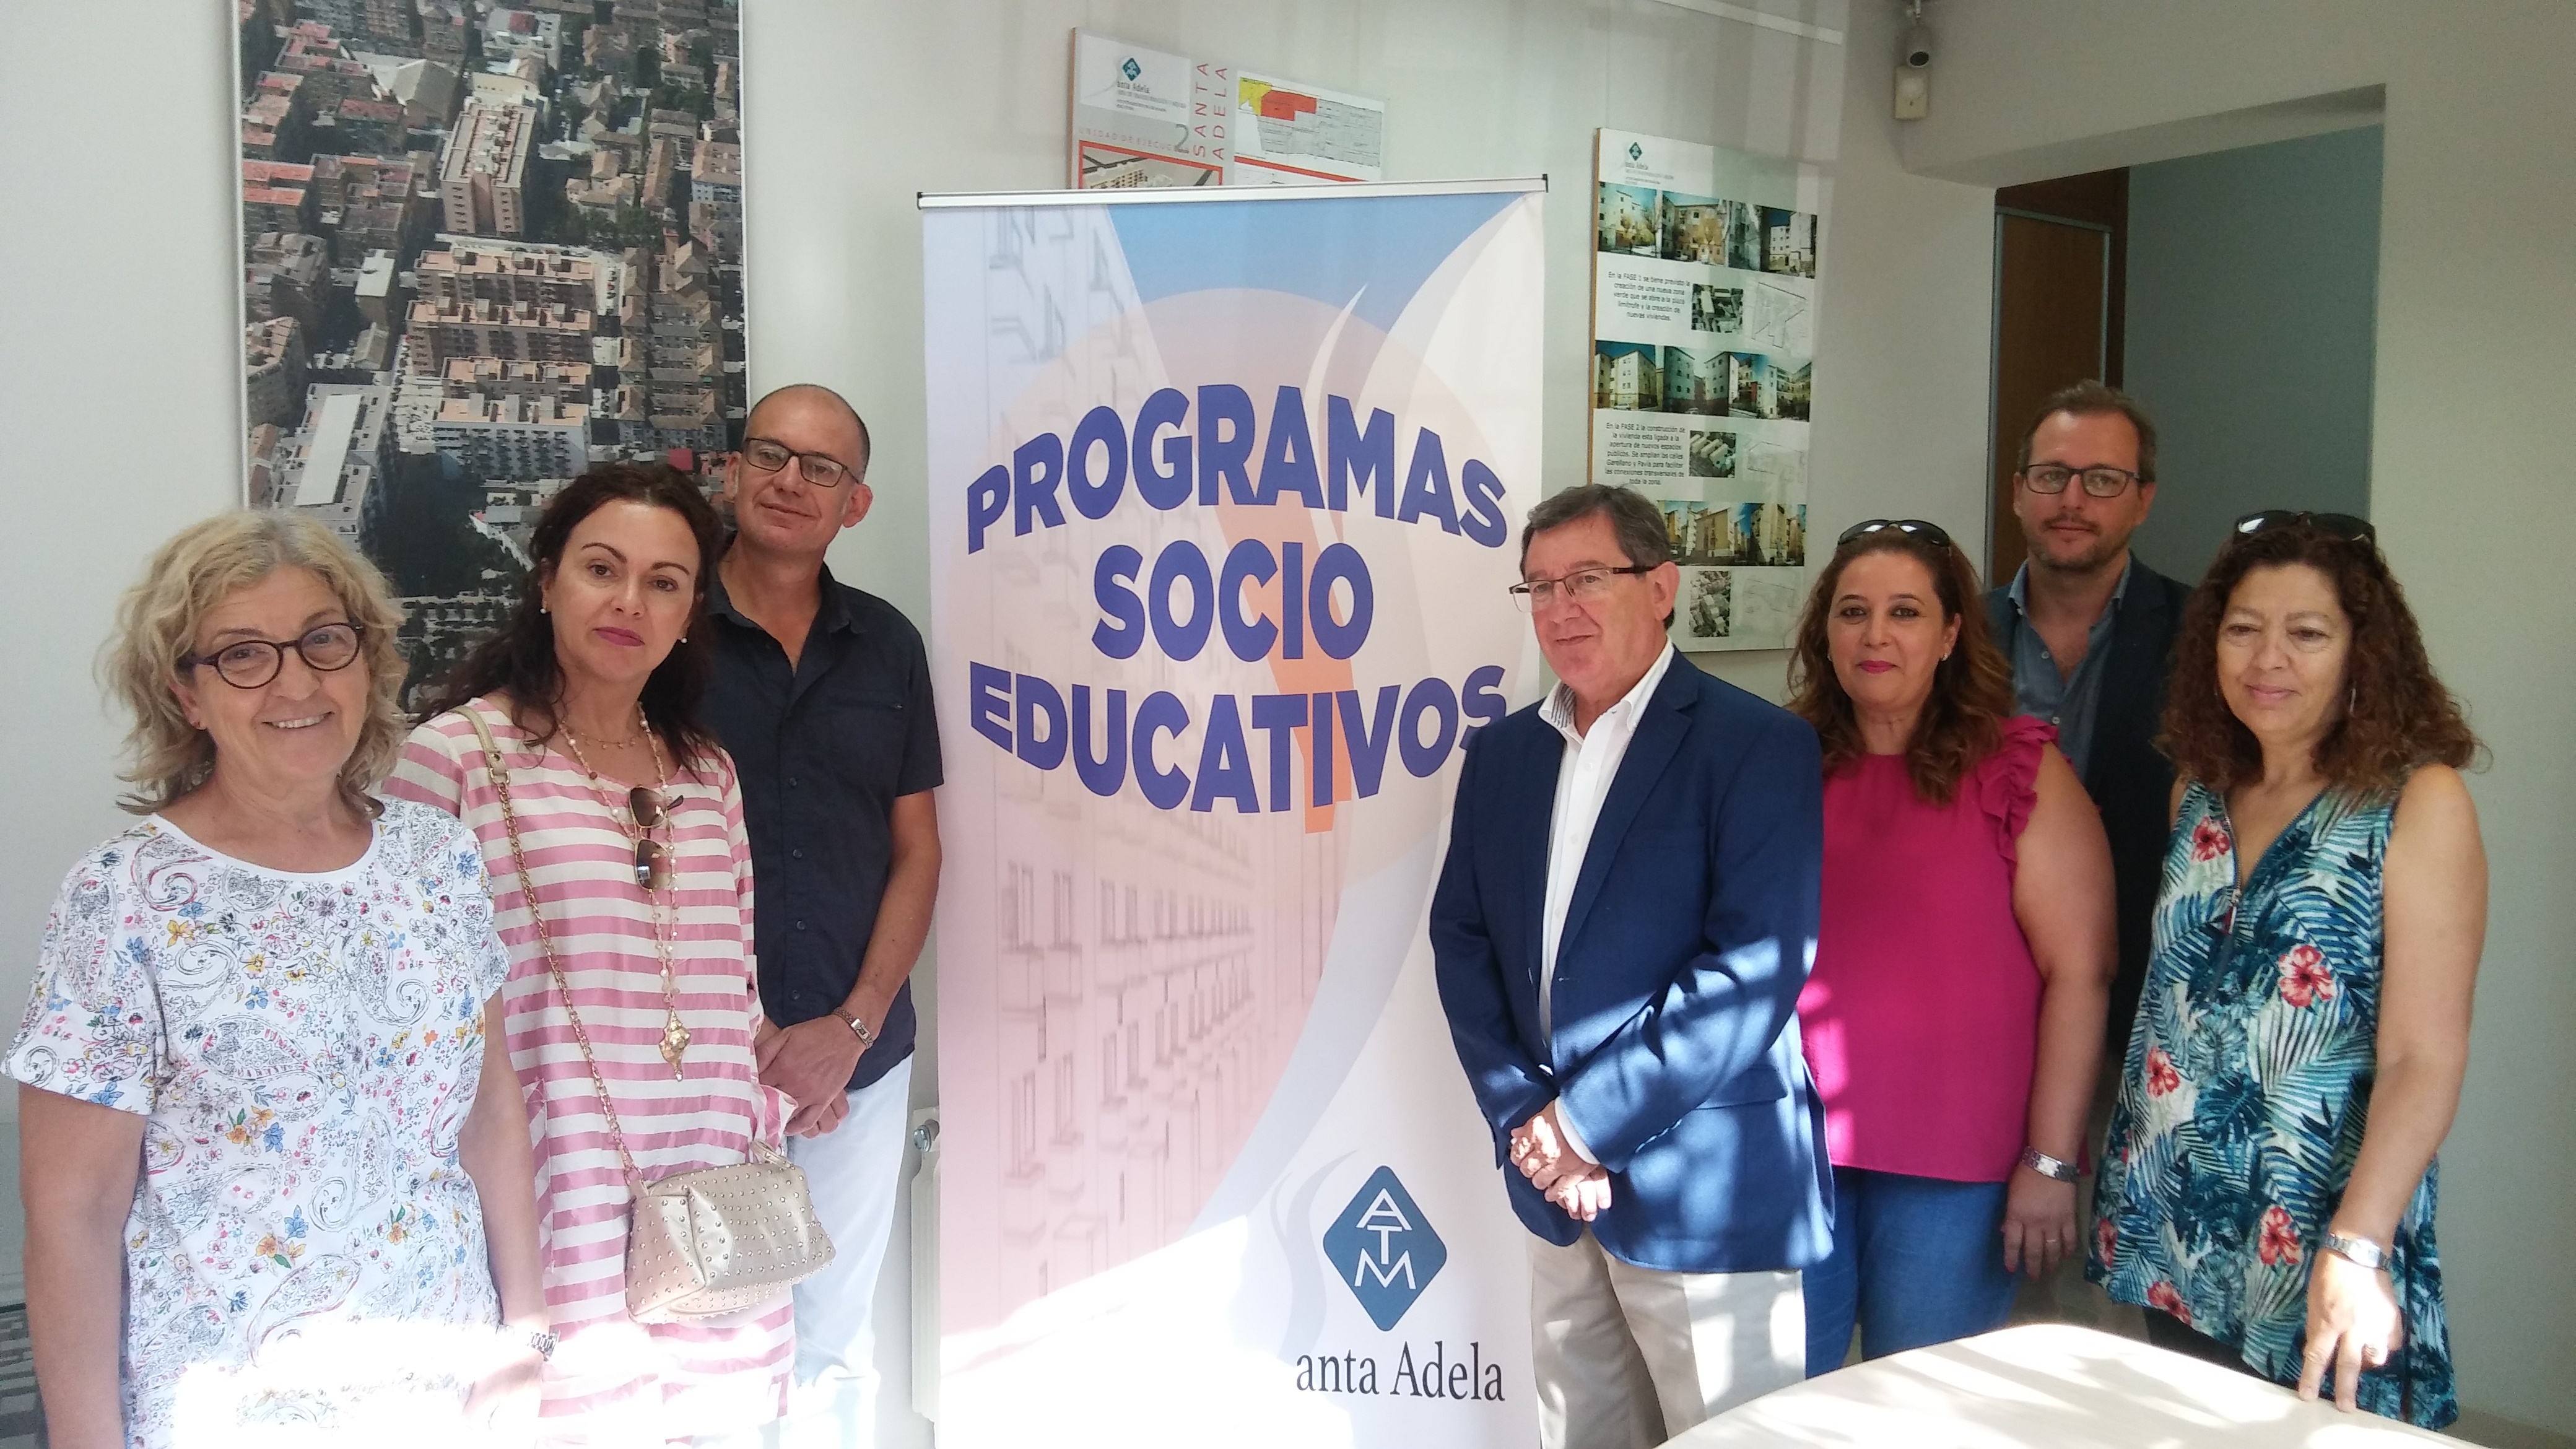 Más de 250 vecinos de Santa Adela participan en los programas educativos del Ayuntamiento